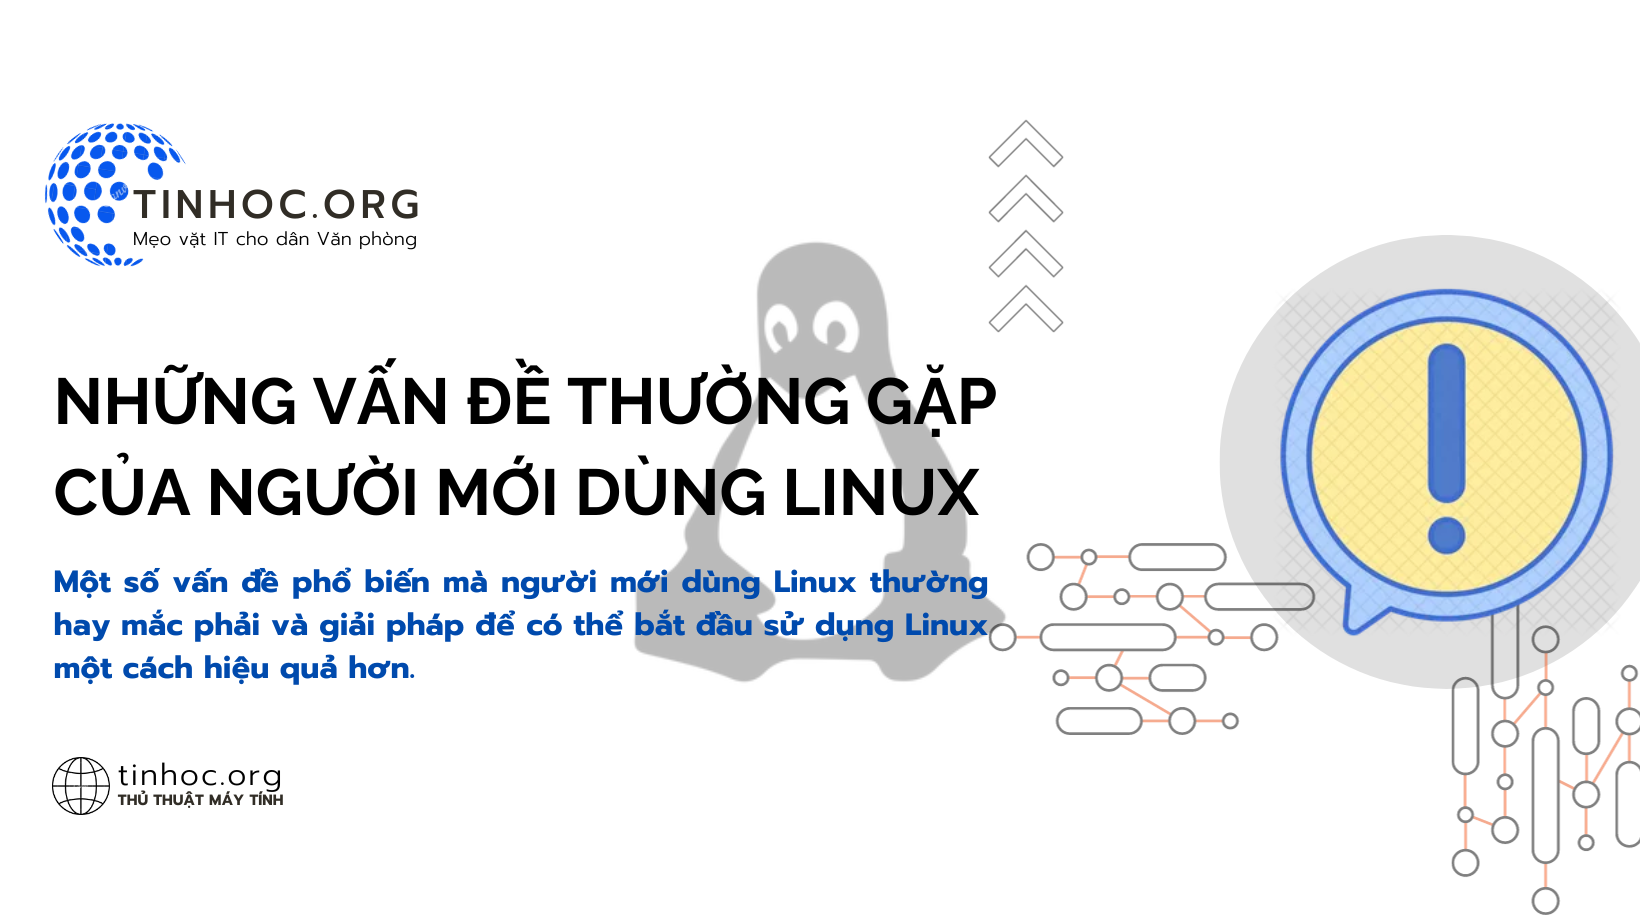 Một số vấn đề phổ biến mà người mới dùng Linux thường hay mắc phải và giải pháp để có thể bắt đầu sử dụng Linux một cách hiệu quả hơn.